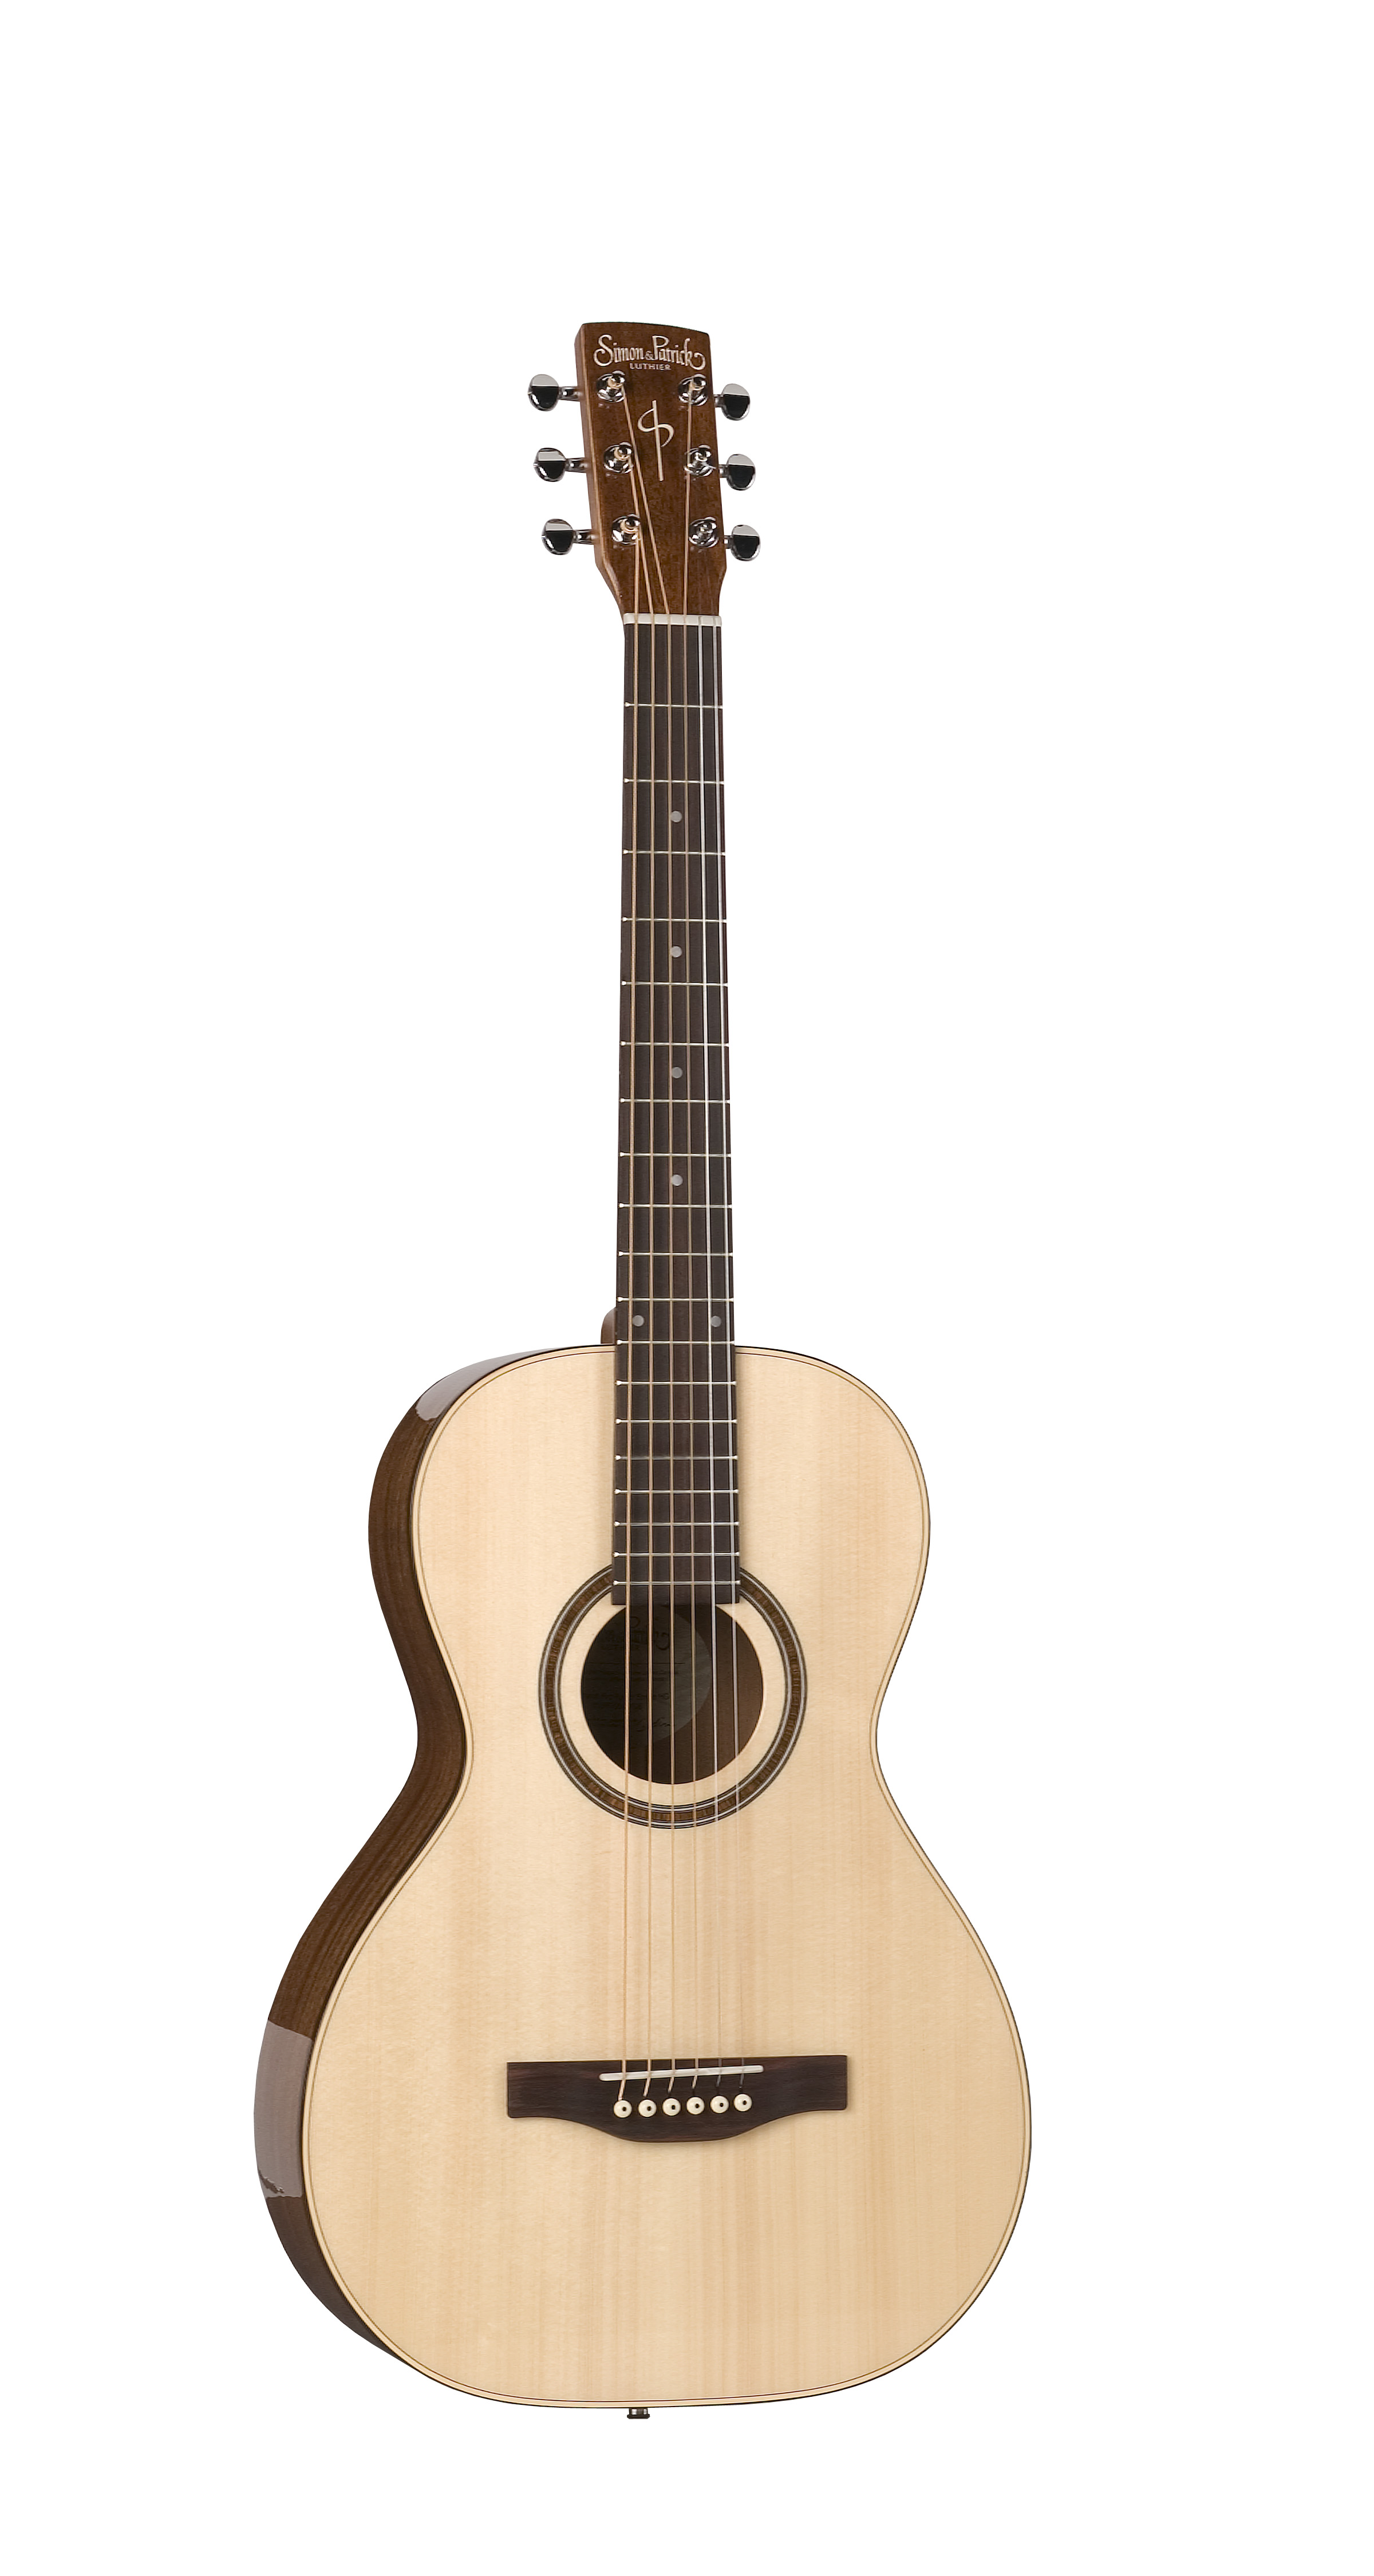 Simon & Patrick 33690 Woodland Pro Parlor Spruce Acoustic Guitar